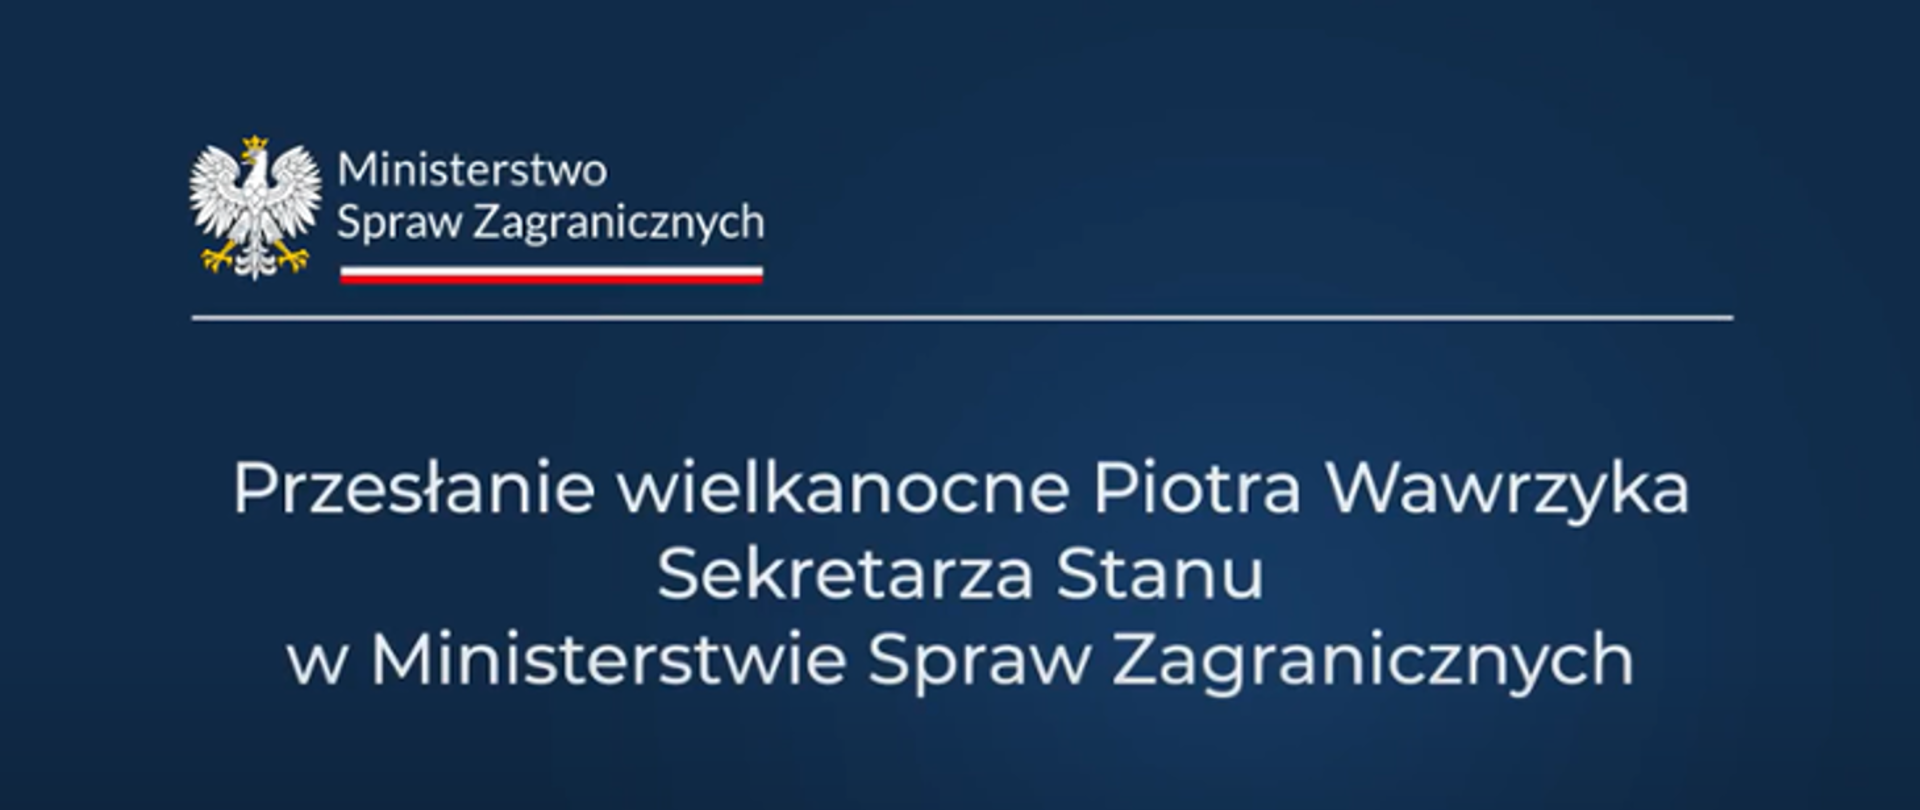 Życzenia i przesłanie wielkanocne Wiceministra Piotra Wawrzyka dla Polonii i Polaków za granicą